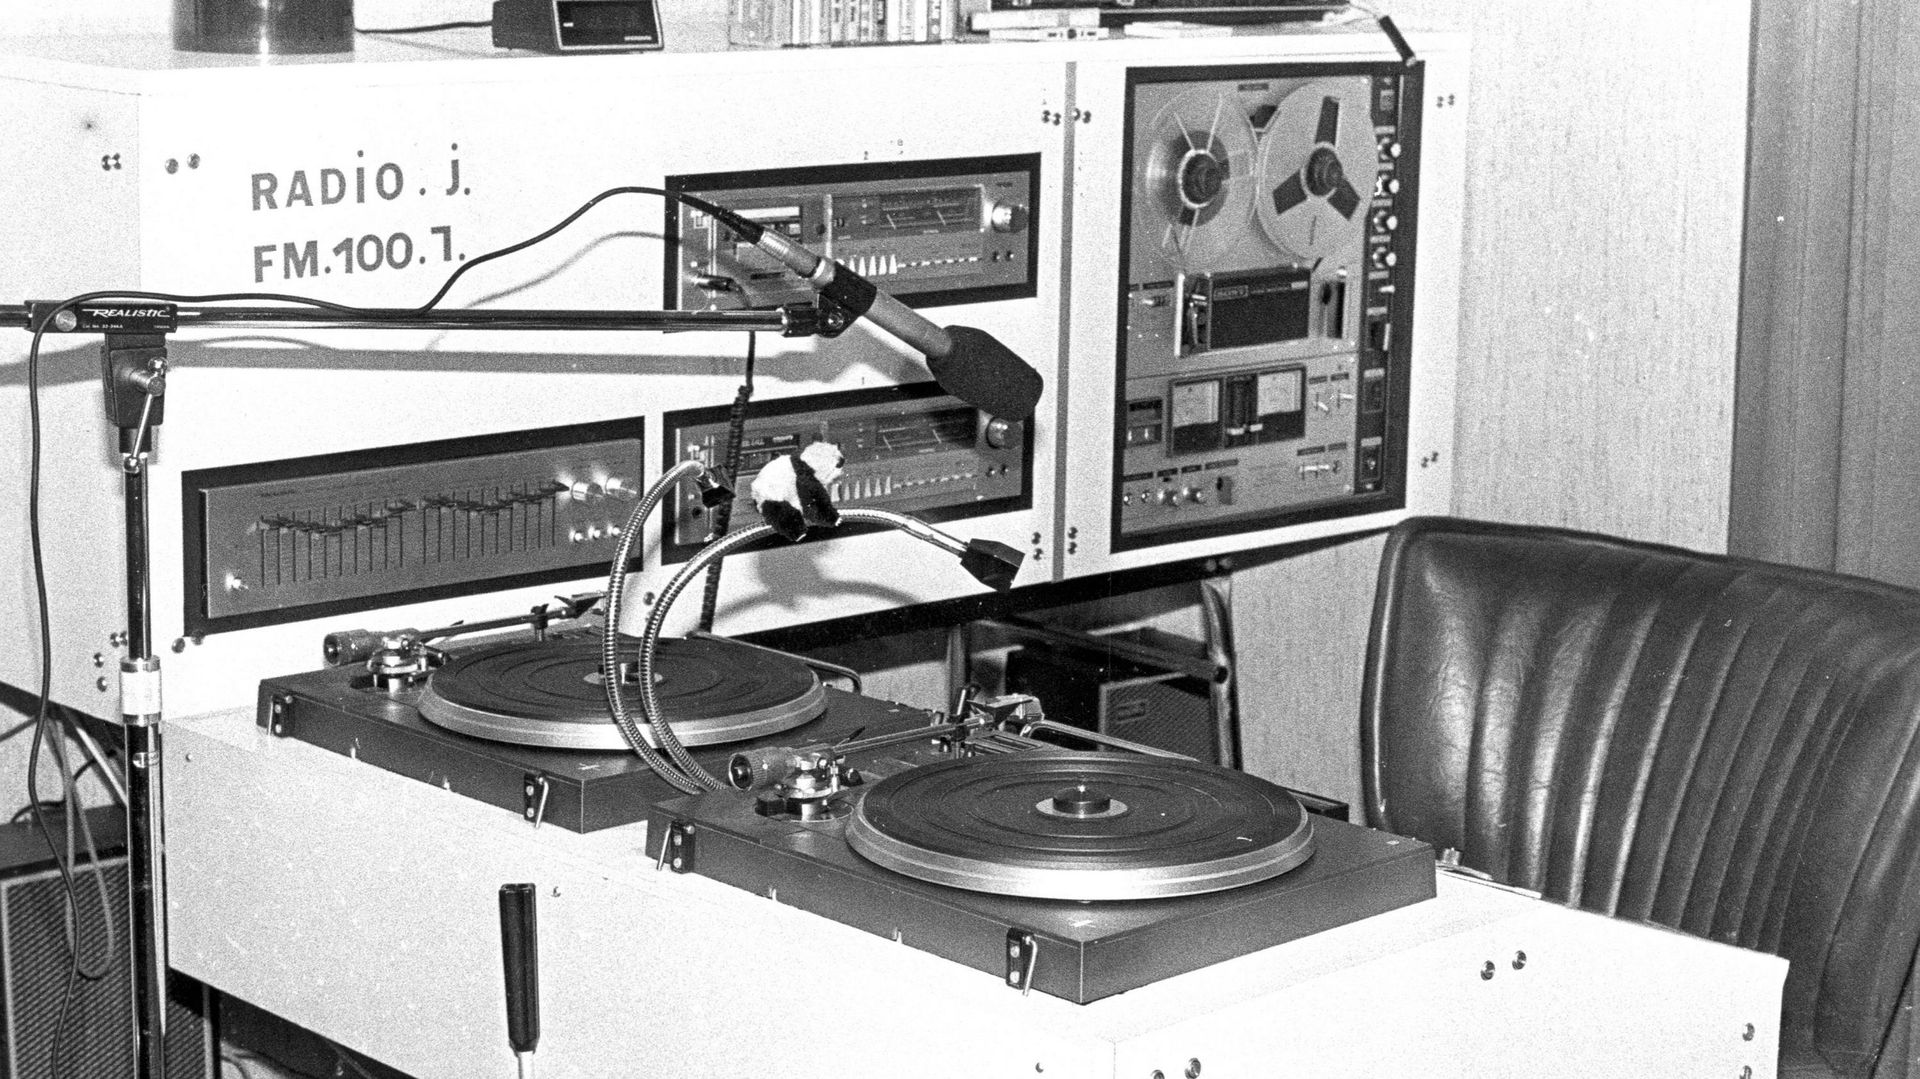 Une histoire toute illustrée d'archives sonores... souvenirs, souvenirs... ici Radio pirate à Andenne, années 80